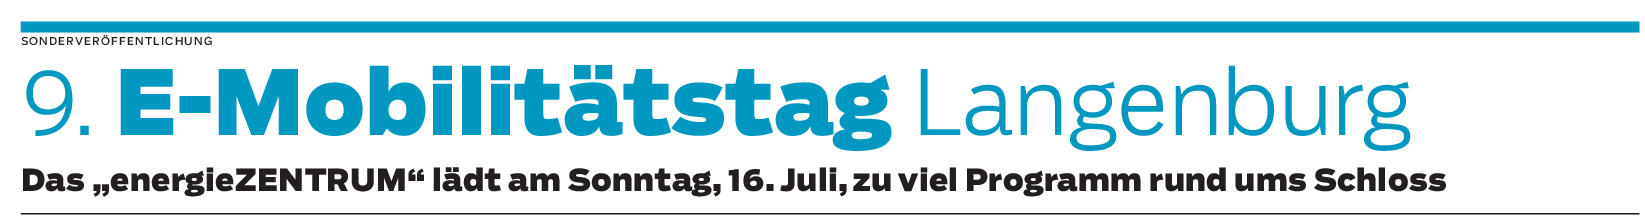 Fahrzeugschau 16. Juli : Langenburg elektrisiert